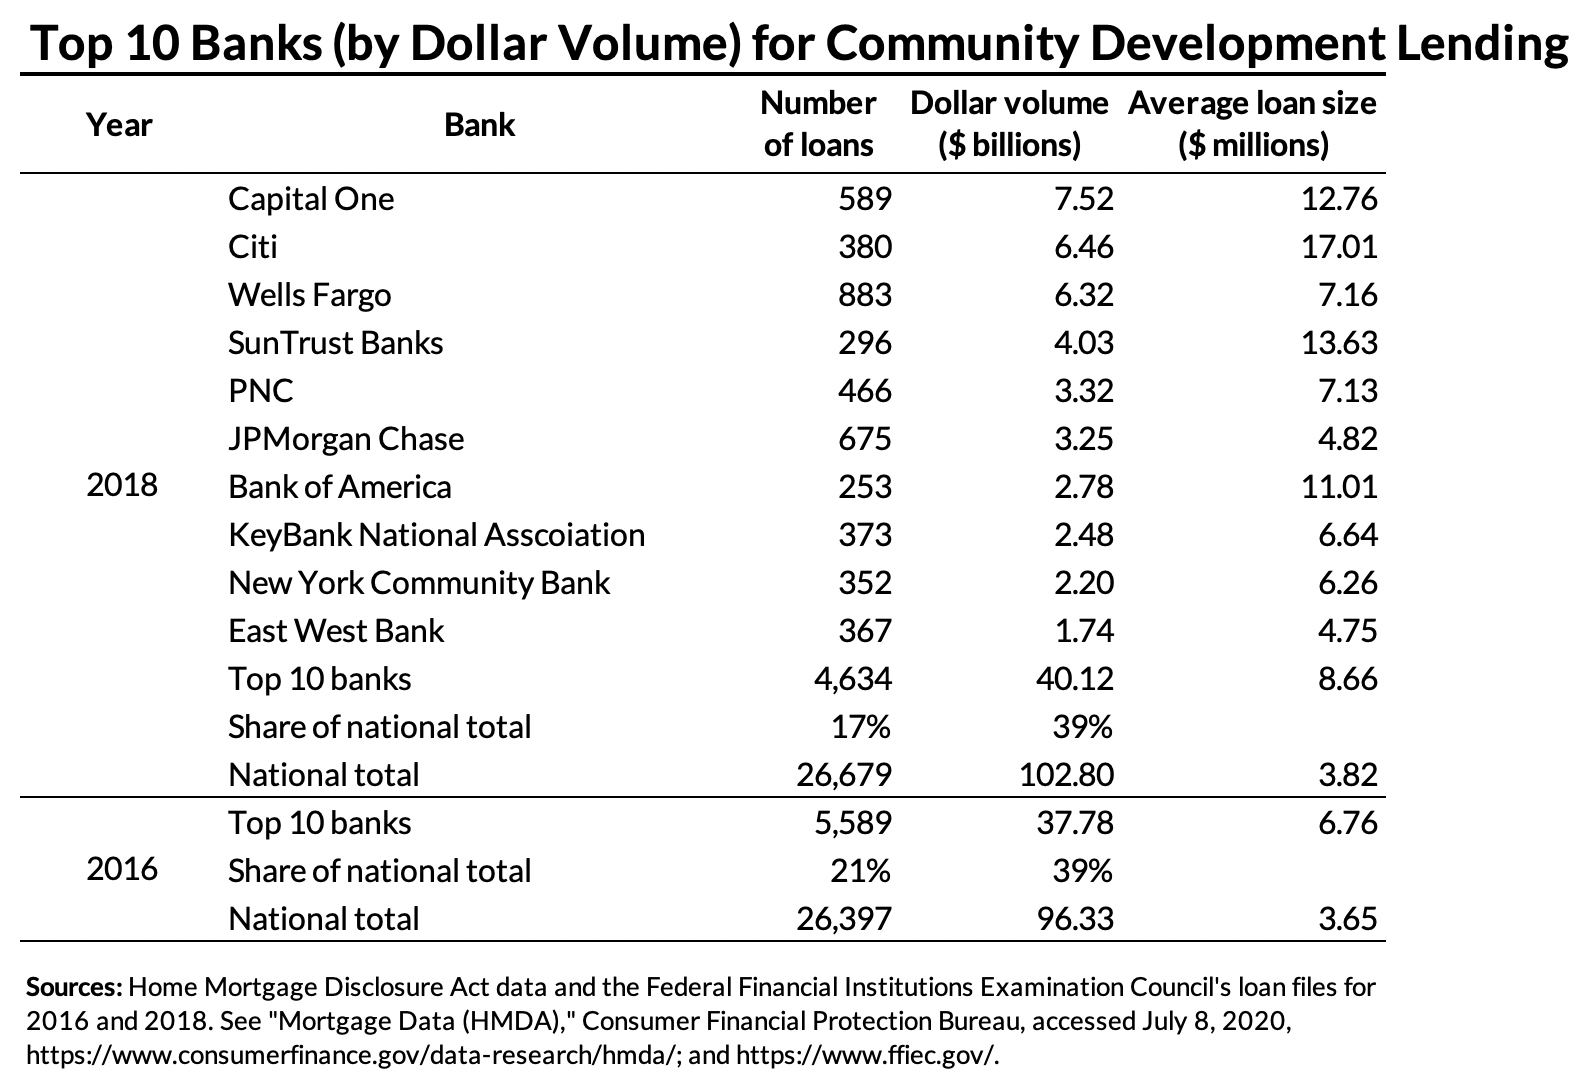 Top 10 banks (by dollar volume) for community development lending